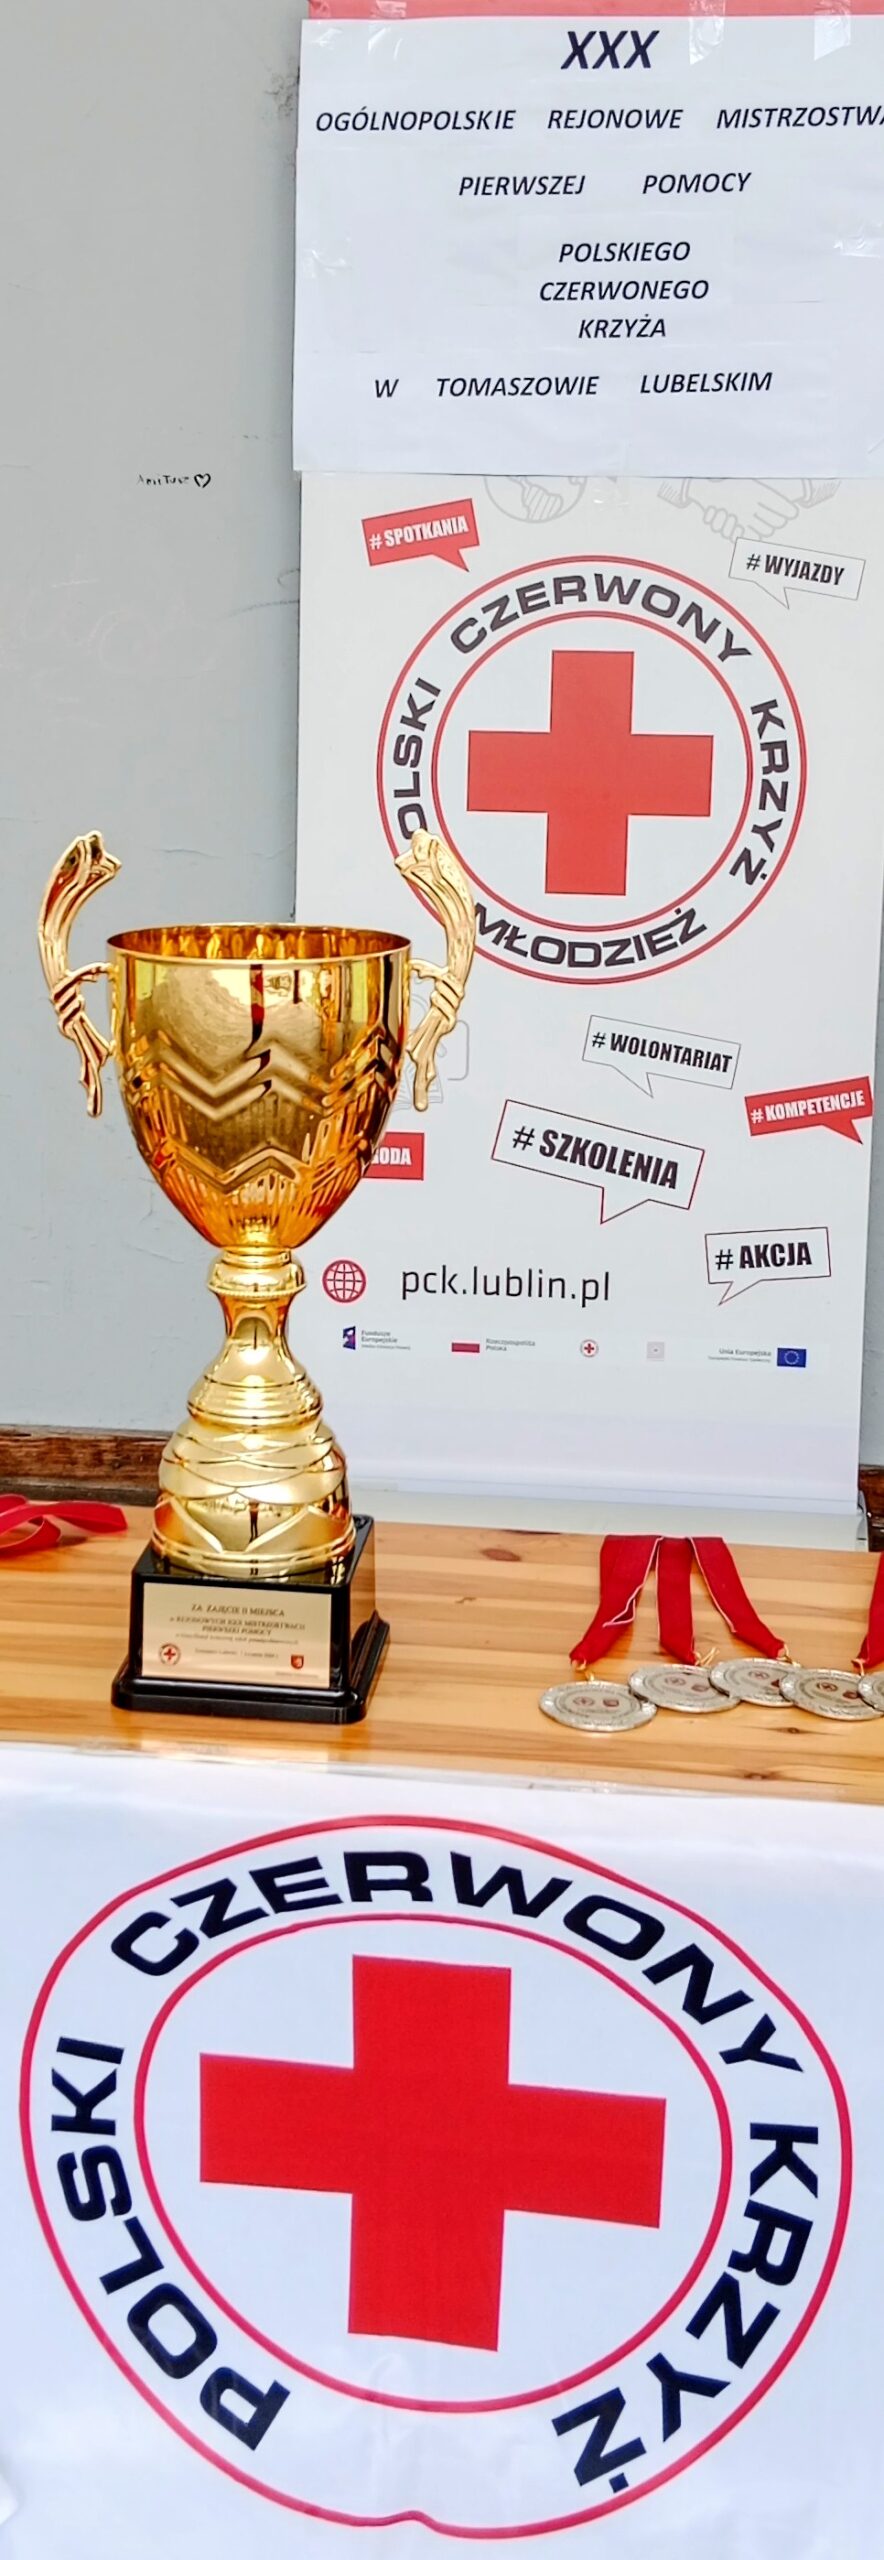 XXX Ogólnopolskie Mistrzostwa Pierwszej Pomocy